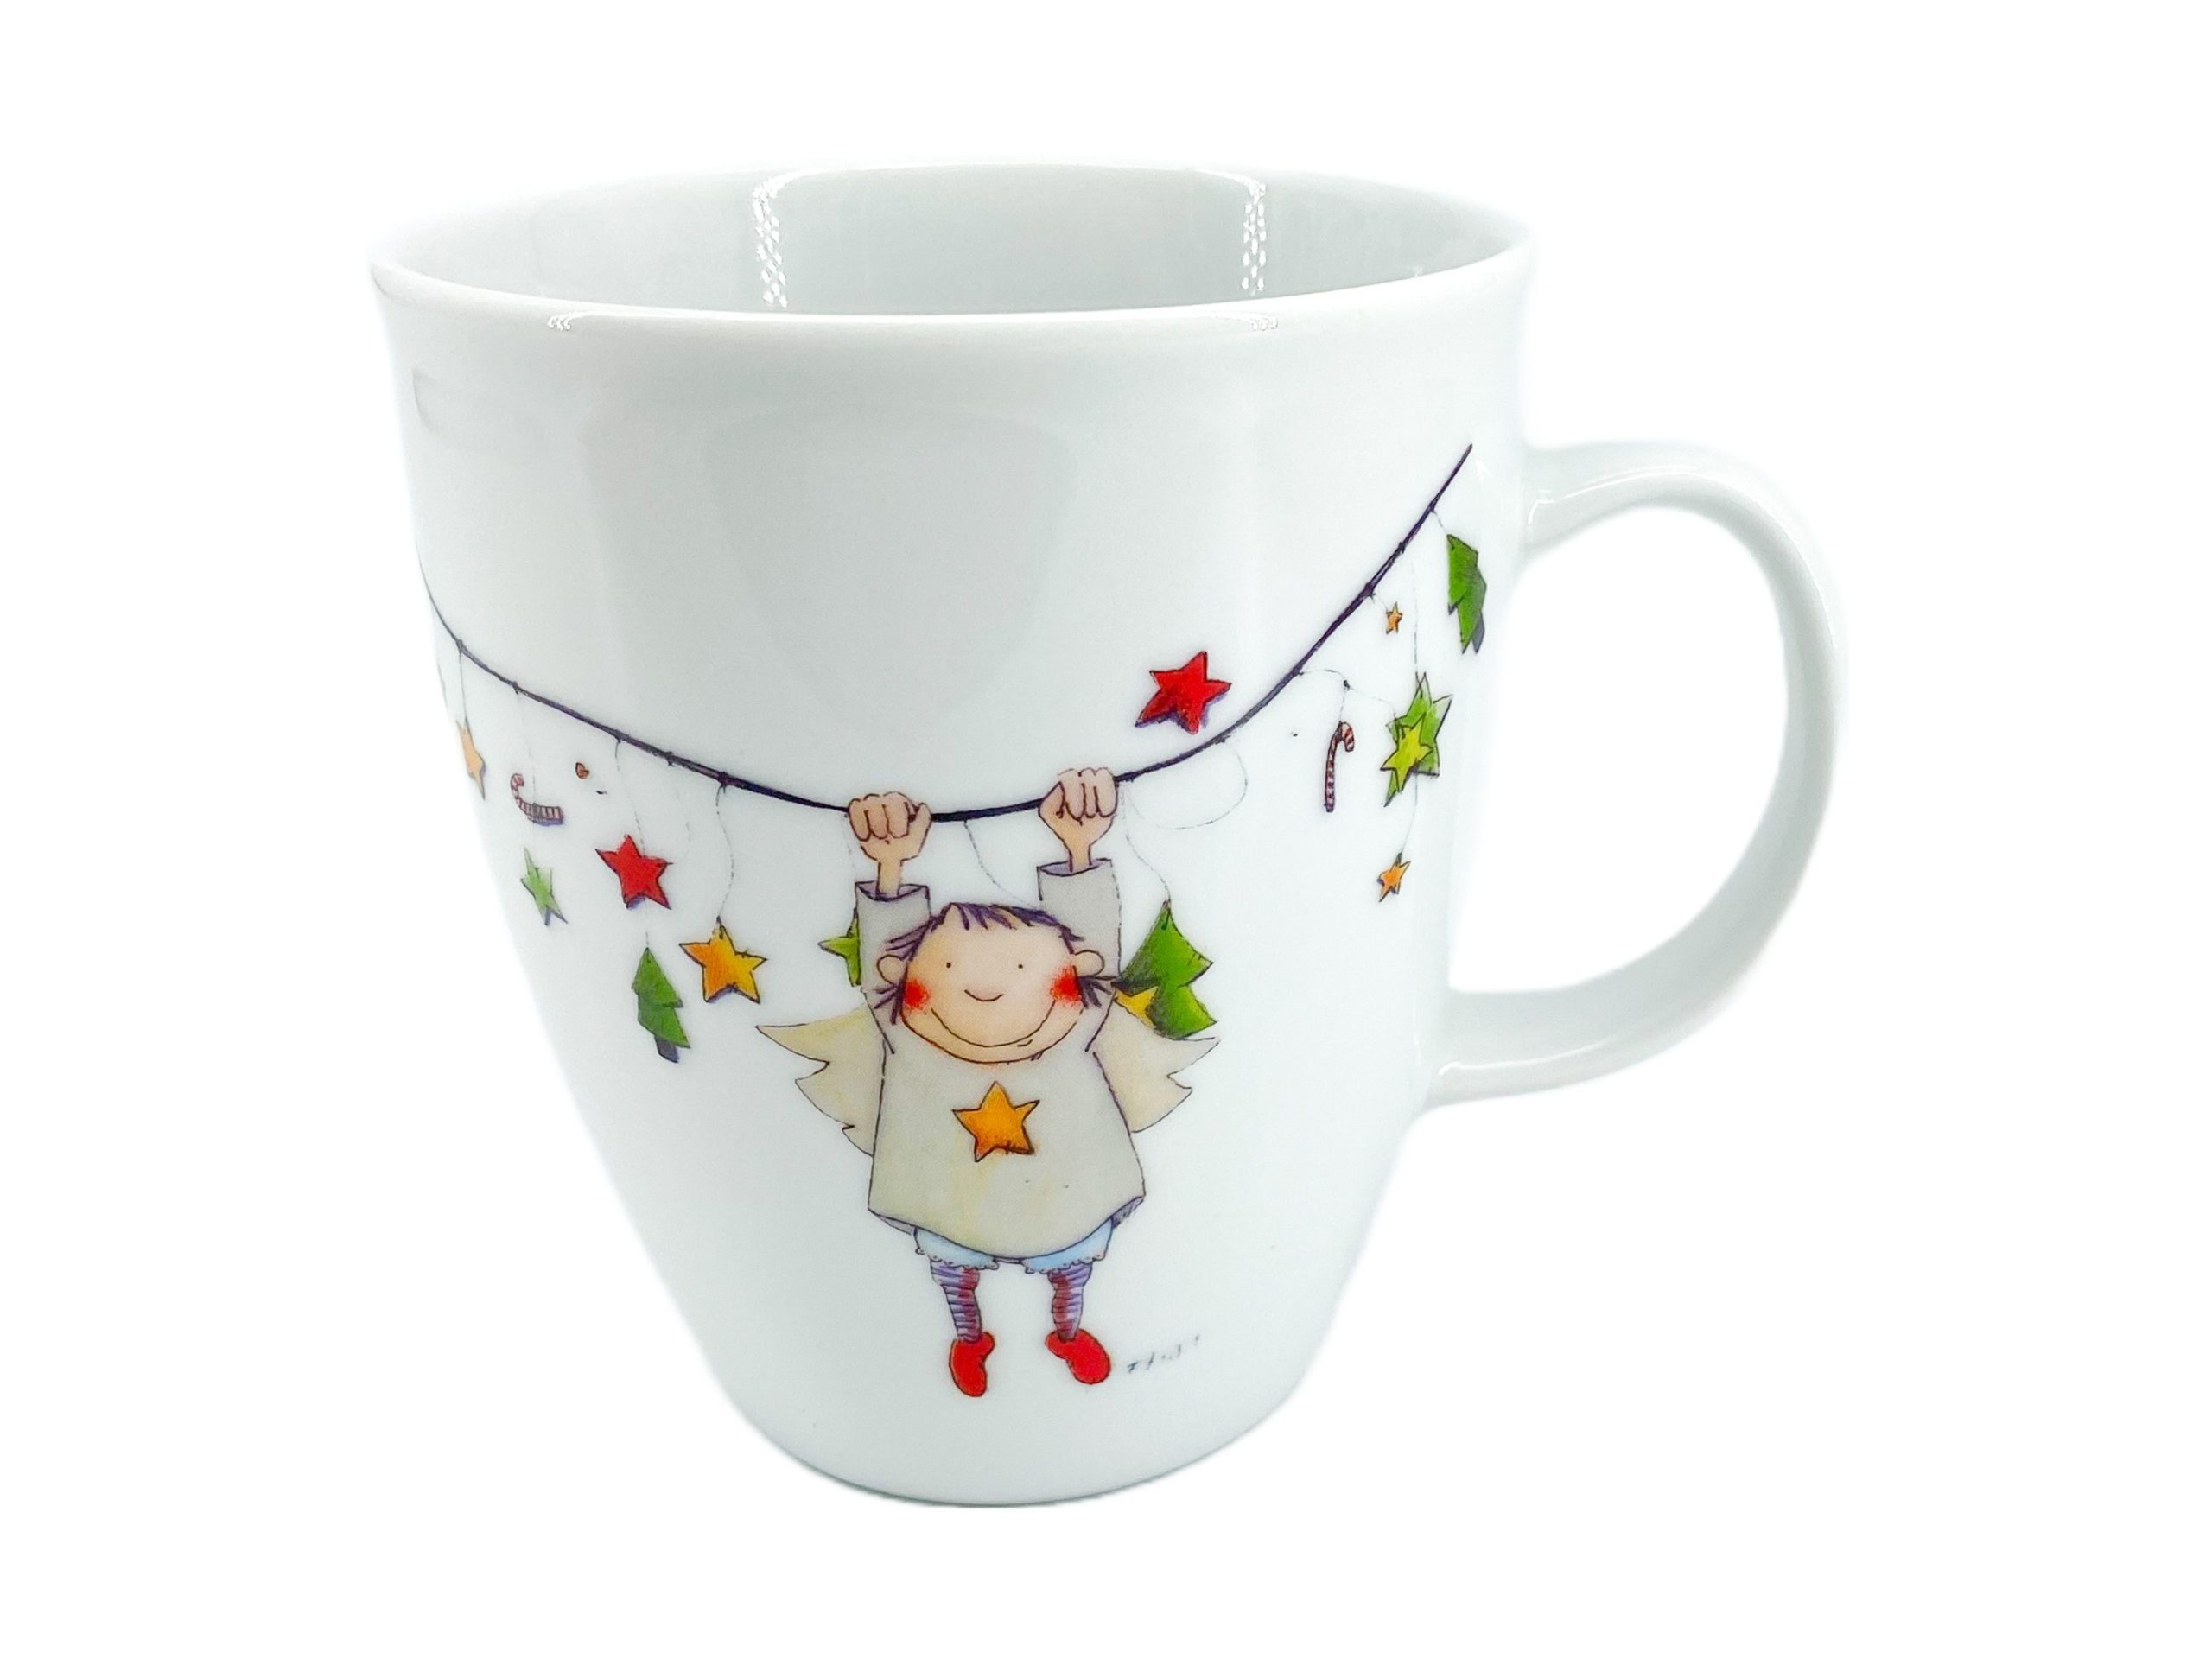 Edition CUP+MUG Porzellan, Weihnachtsfigur, Company DEMIM